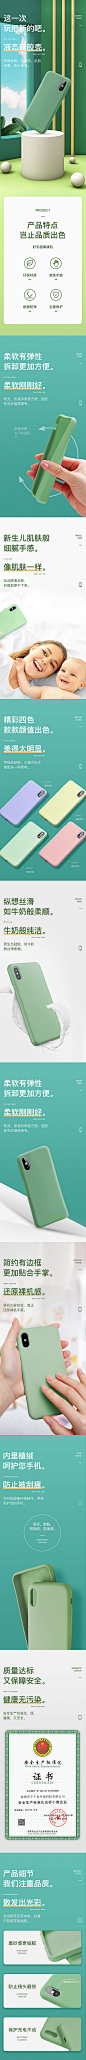 【电商情报室——优秀详情页】产品优势：液态硅胶手机壳，如牛奶般丝滑，婴儿肌肤般幼嫩，给消费者最极致的手感体验。手机作为如今与人们每日长时间相处的工具，手机壳的手感正成为消费者的重点需求。页面设计：整体上采用浅绿色的小清新风格，带给消费者舒适的视觉感受，也符合产品的舒适特点。同时文案卖点突出，对产品细节特点亦有很好的展示。